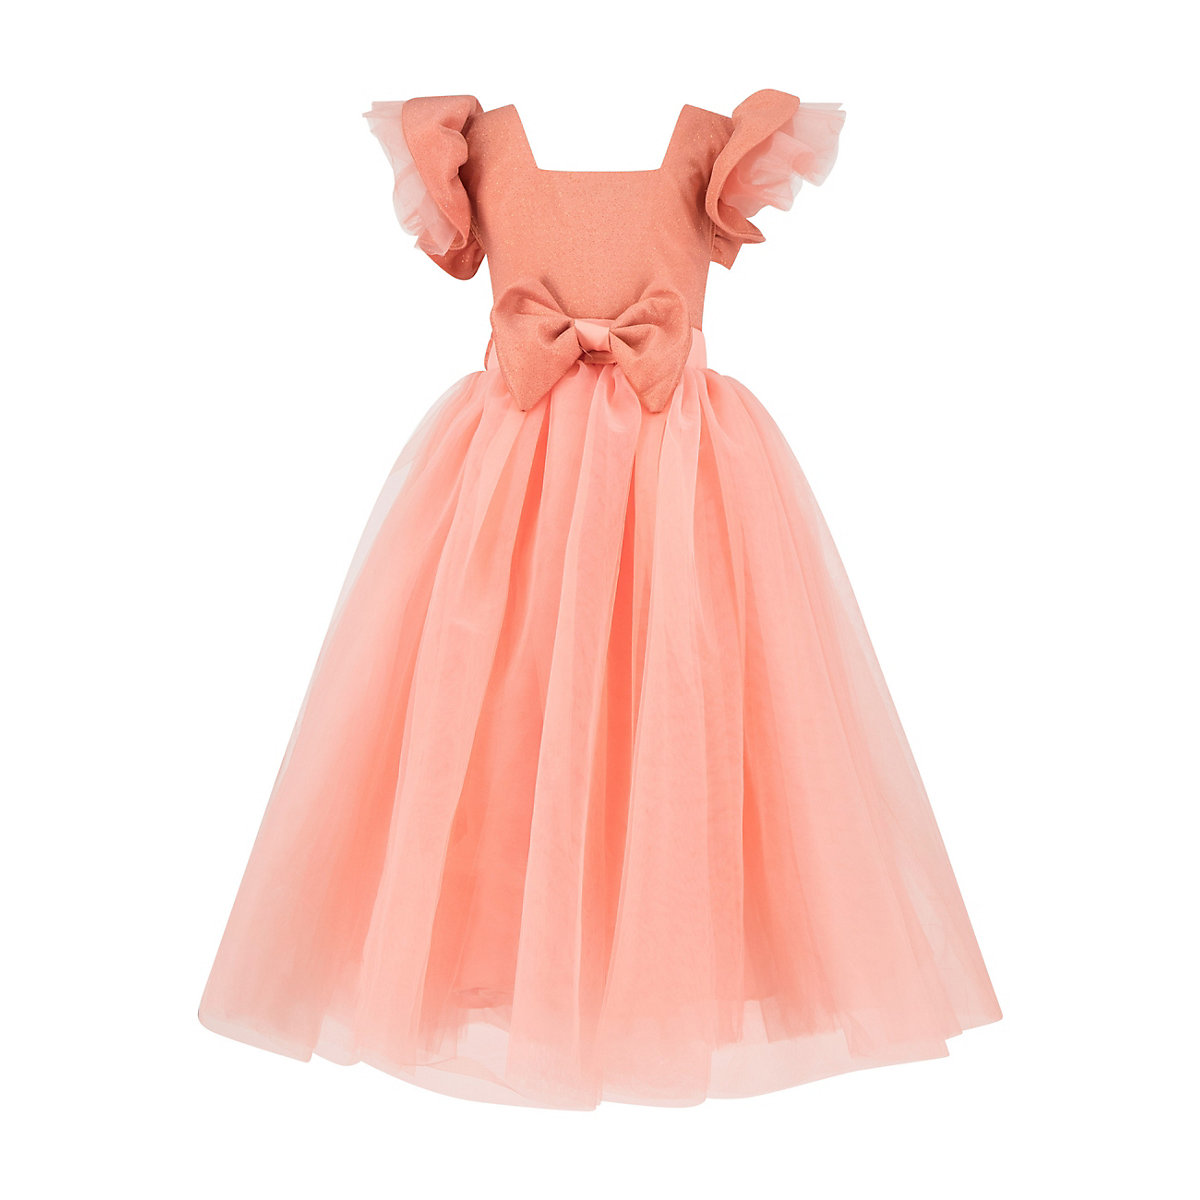 Prestije A-Linien-Kleid Kinder Mädchen Brautkleid Kleider pink